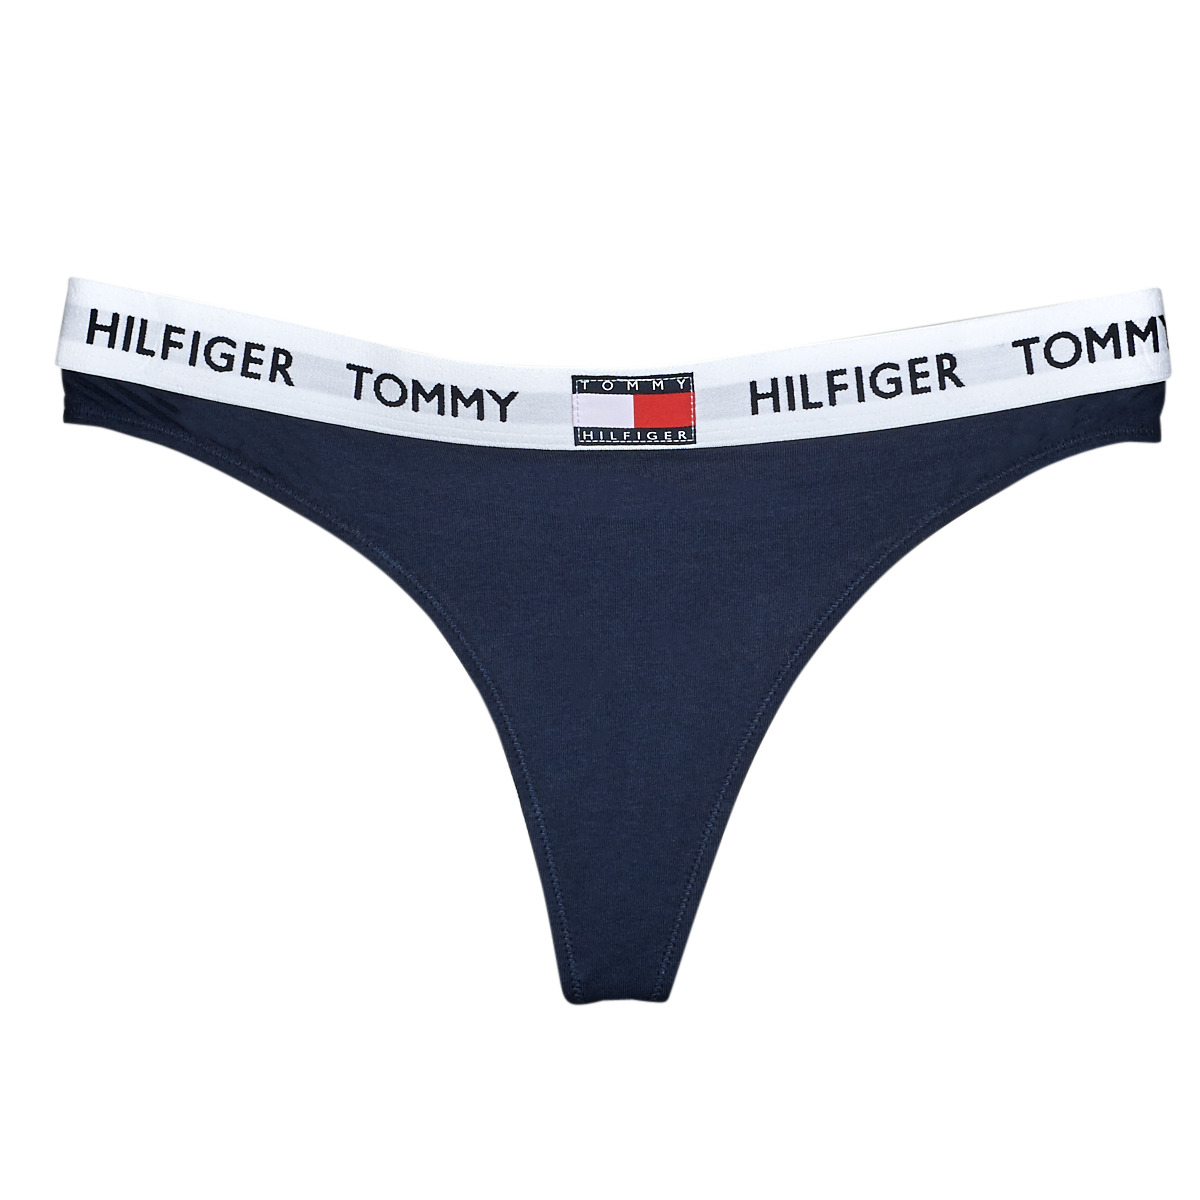 Sous-vêtements Femme Tommy Hilfiger embroidered logo V-neck jumper THONG Marine